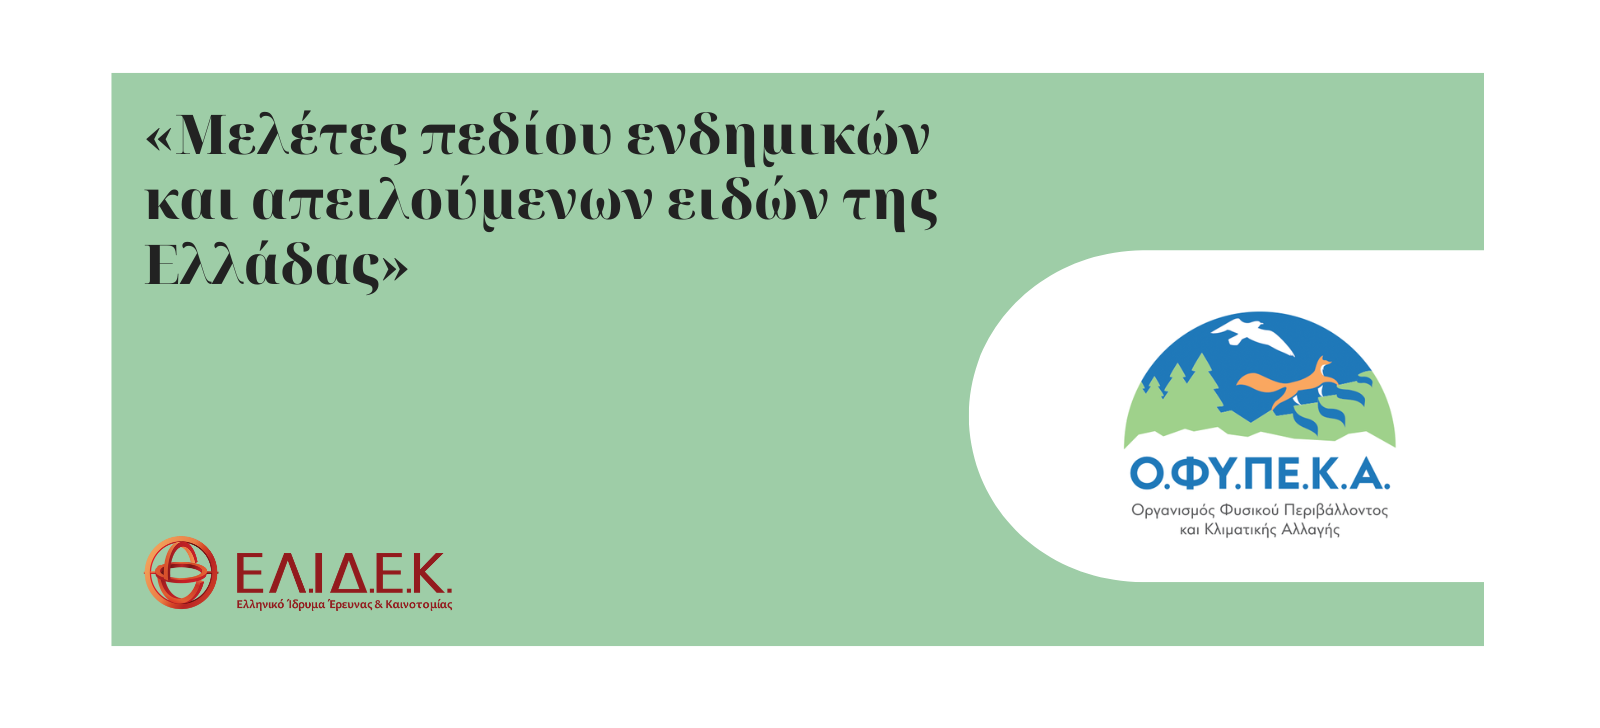 Προκήρυξη «Δράσεις προστασίας, διατήρησης και ανάδειξης της βιοποικιλότητας. Μελέτες πεδίου ενδημικών, απειλούμενων και εθνικής σημασίας ειδών της Ελλάδας» με τη χρηματοδότηση του Ο.ΦΥ.ΠΕ.Κ.Α.